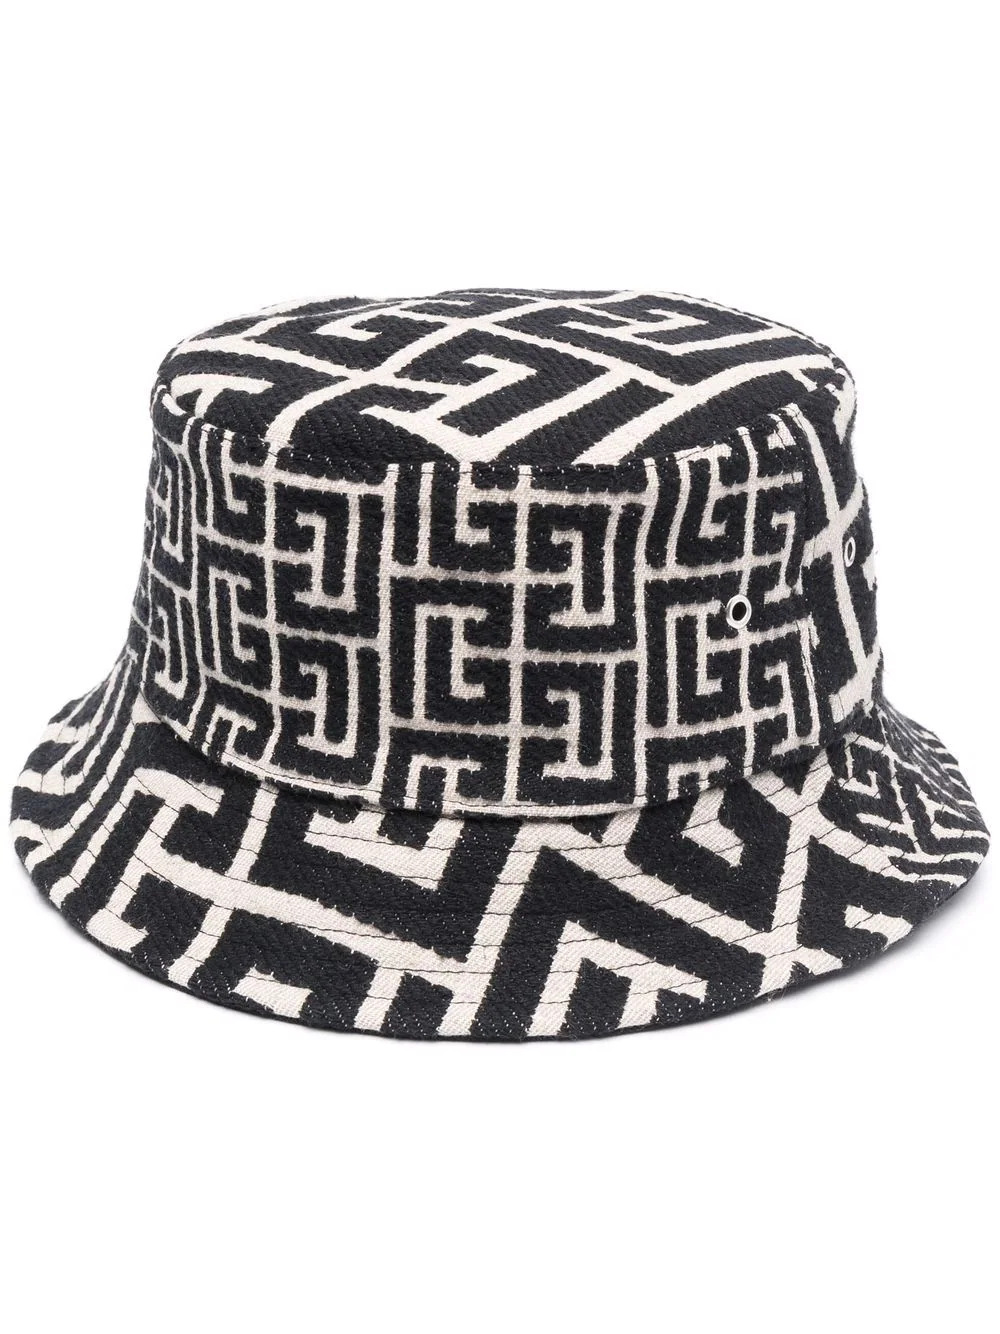 Jacquard Monogramm Bucket Hat in Schwarz-Weiß